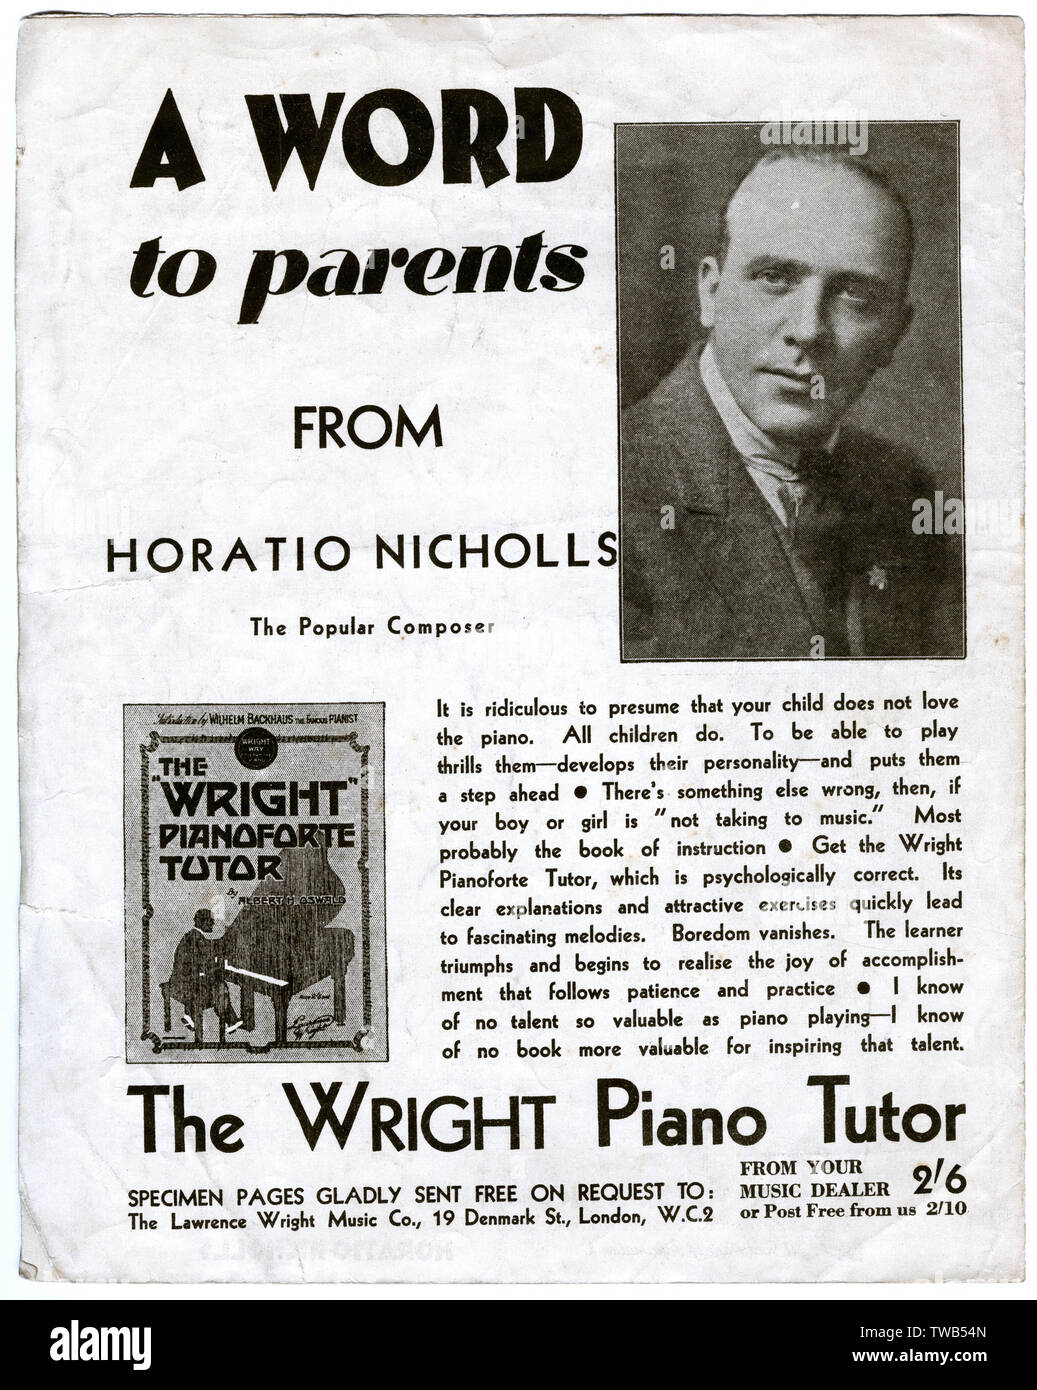 Anuncio, el Wright Pianoforte Tutor por Albert H Oswald -- una palabra a los padres de Horatio Nicholls, el popular compositor. Fecha: 1930 Foto de stock